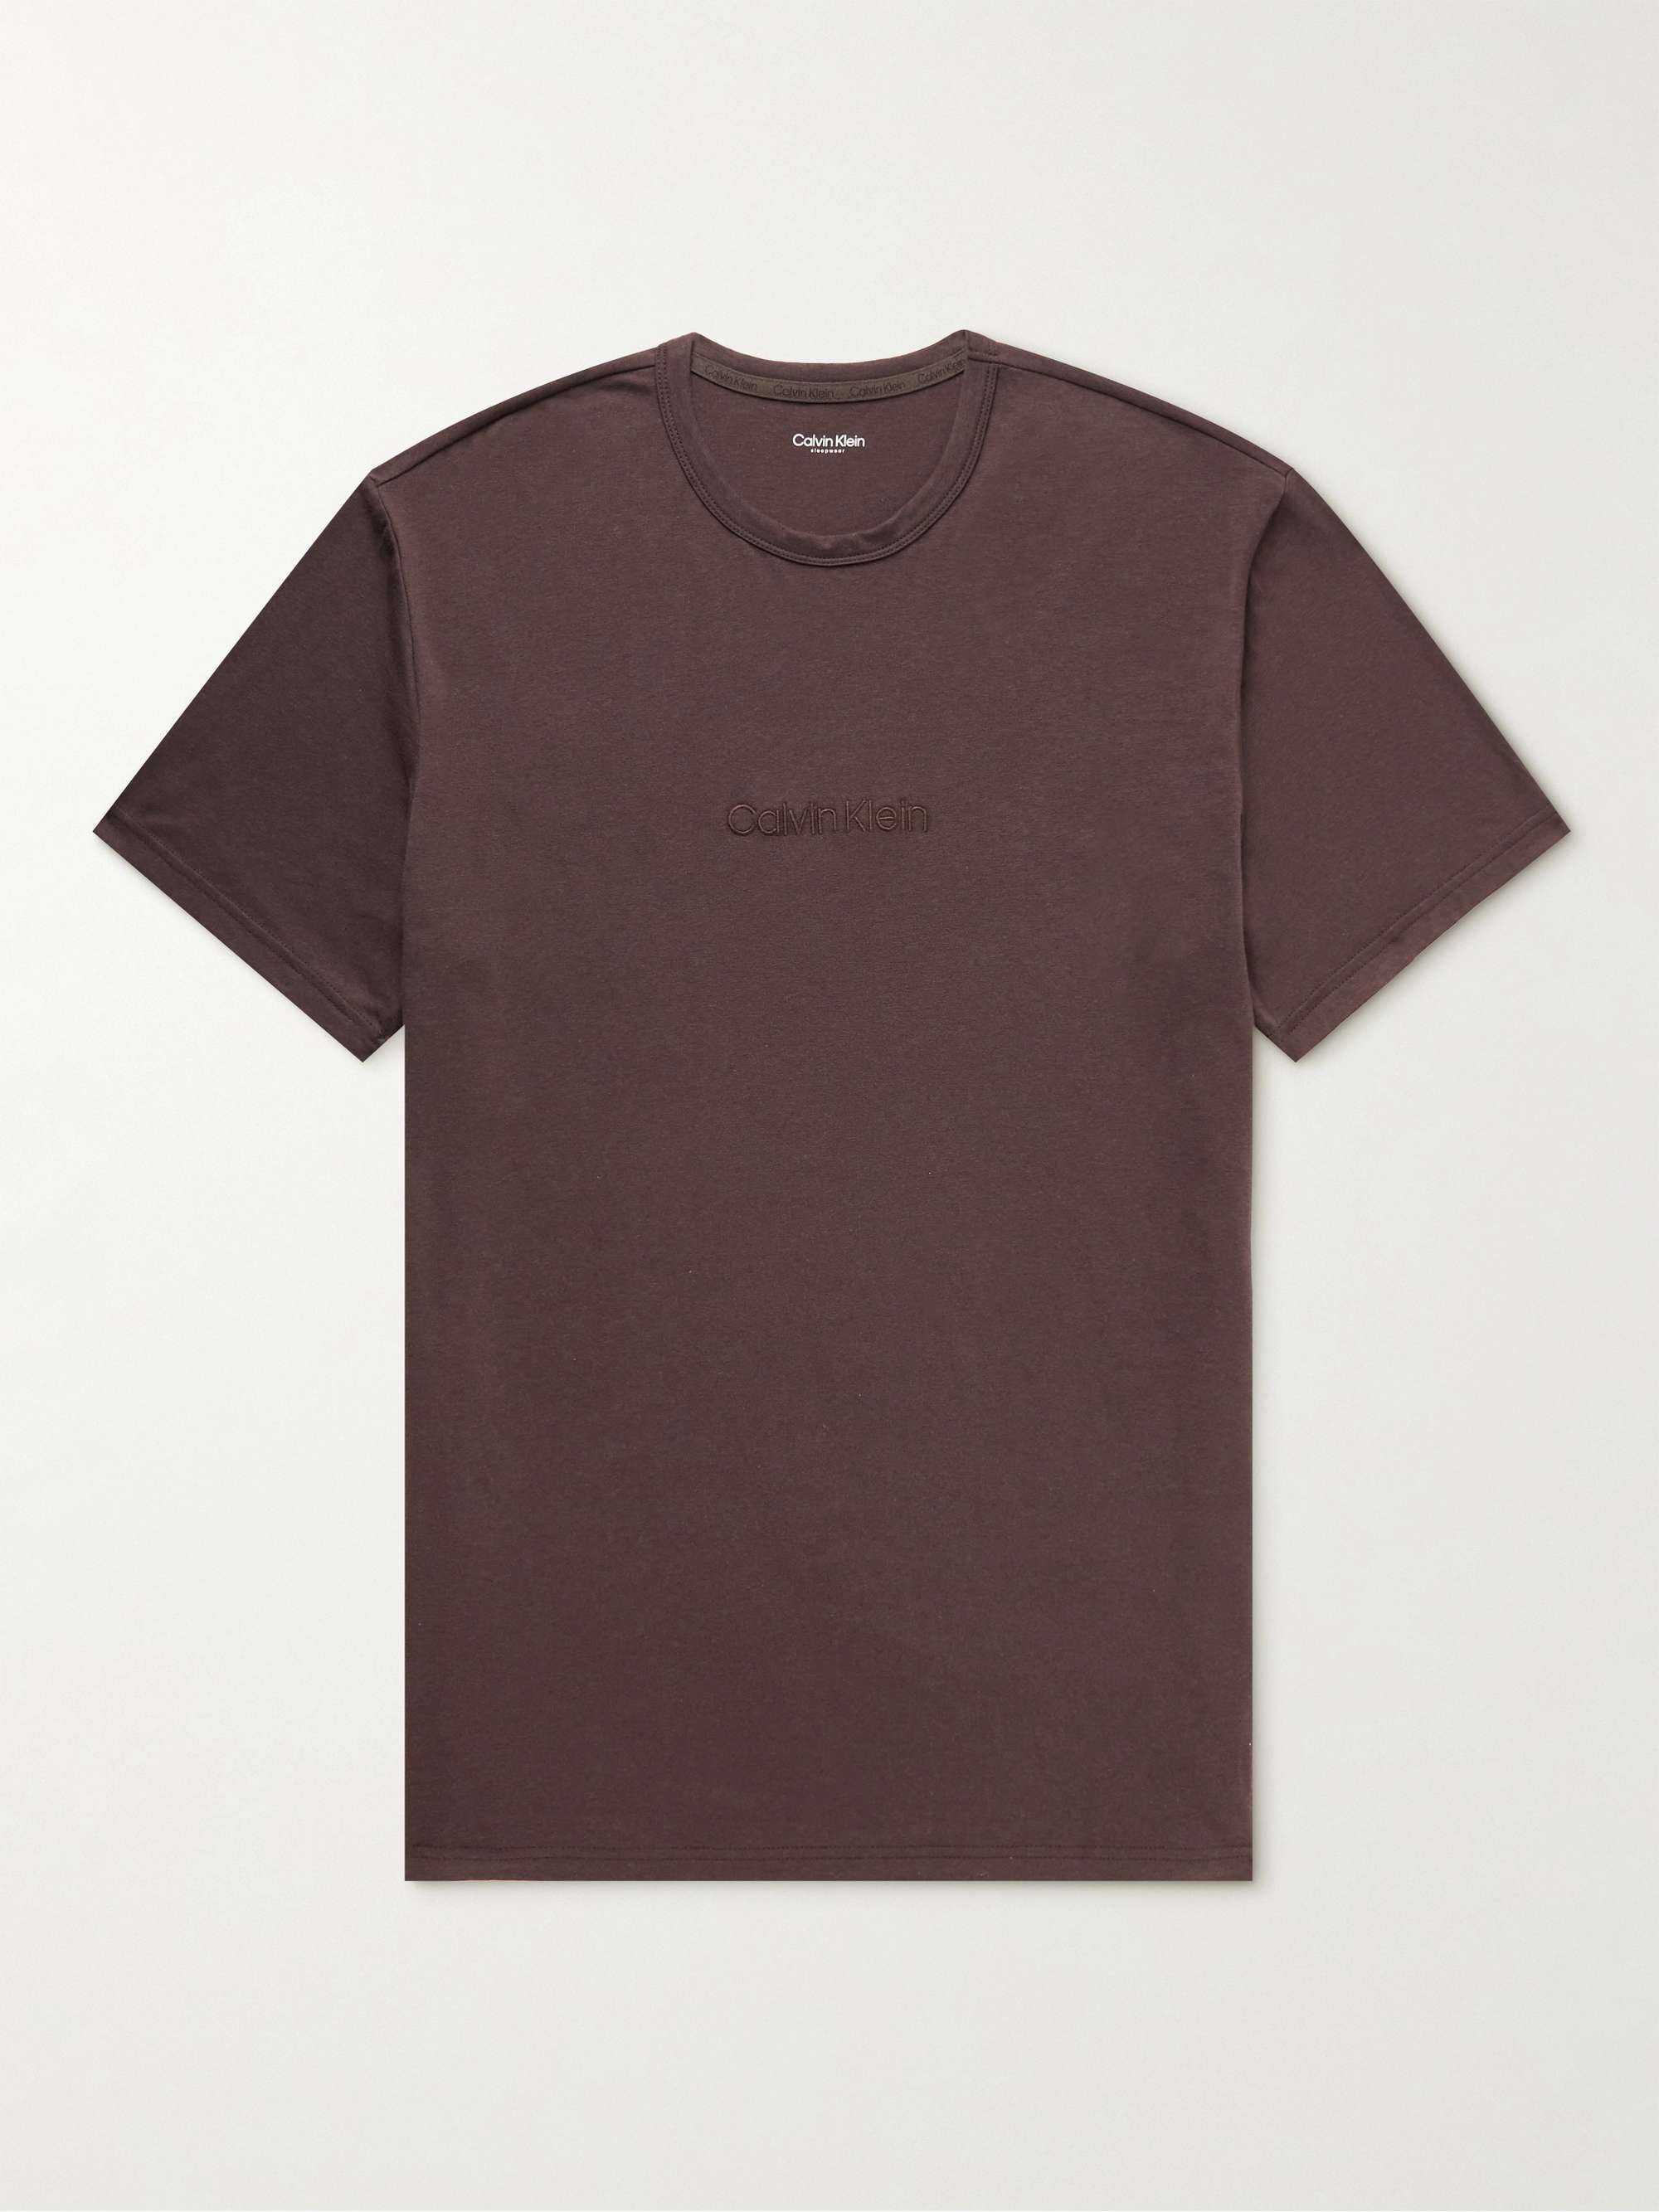 CALVIN KLEIN UNDERWEAR Logo-Embroidered Cotton-Blend Jersey T-Shirt for Men  | MR PORTER